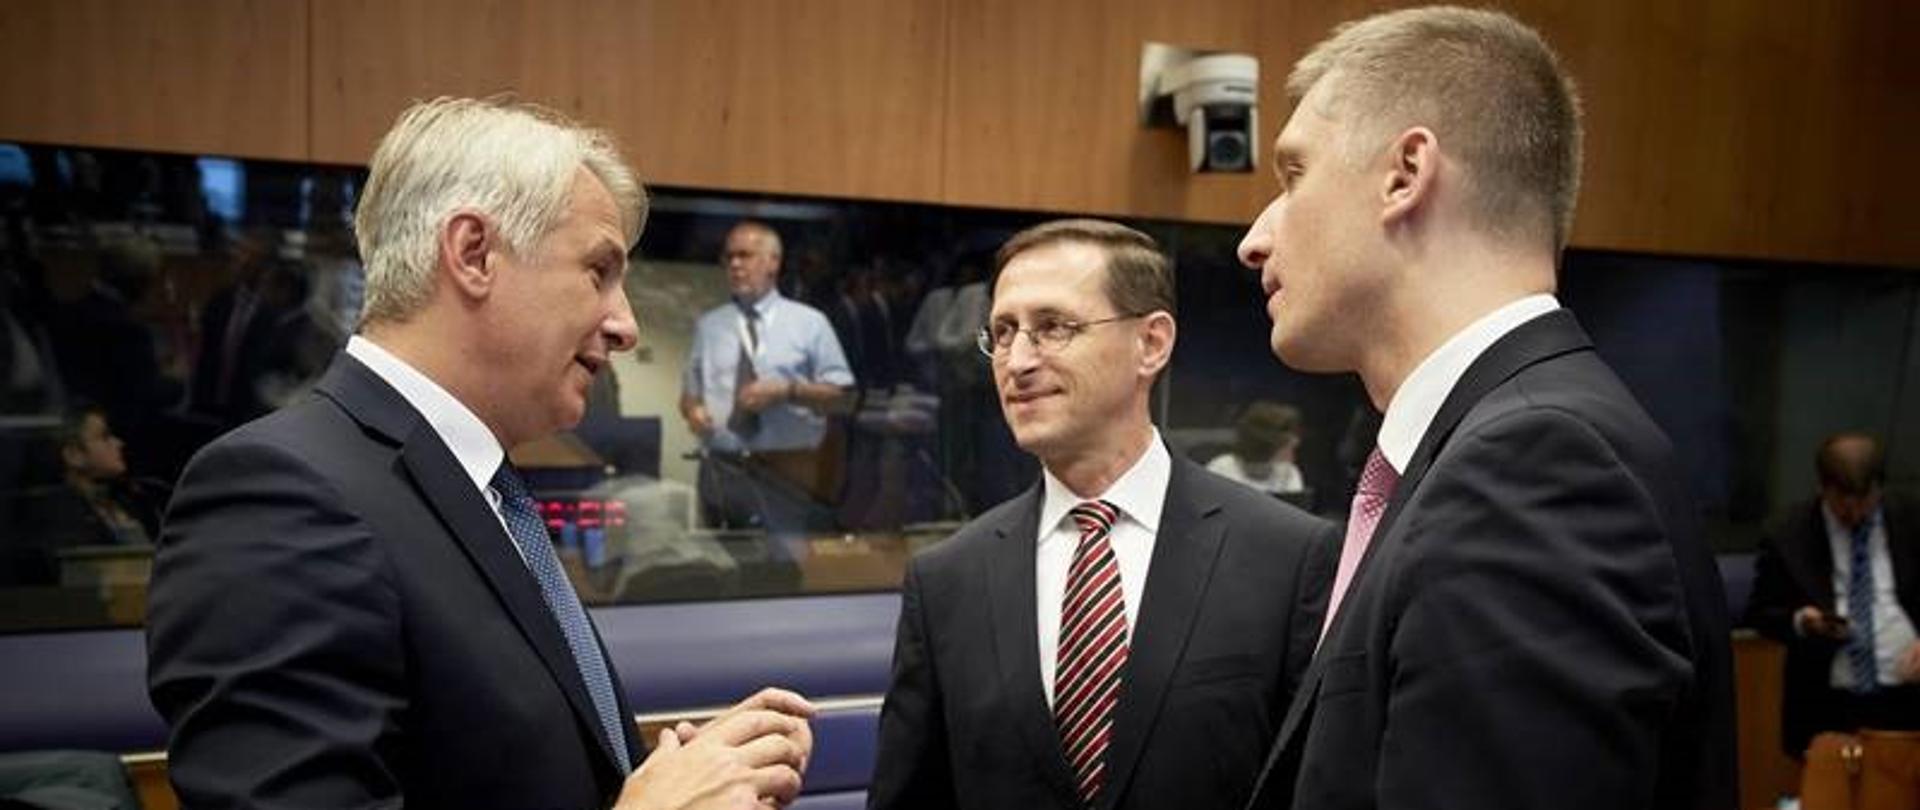 wiceminister Piotr Nowak (z prawej) w otoczeniu dwóch innych uczestników na spotkaniu ECOFIN